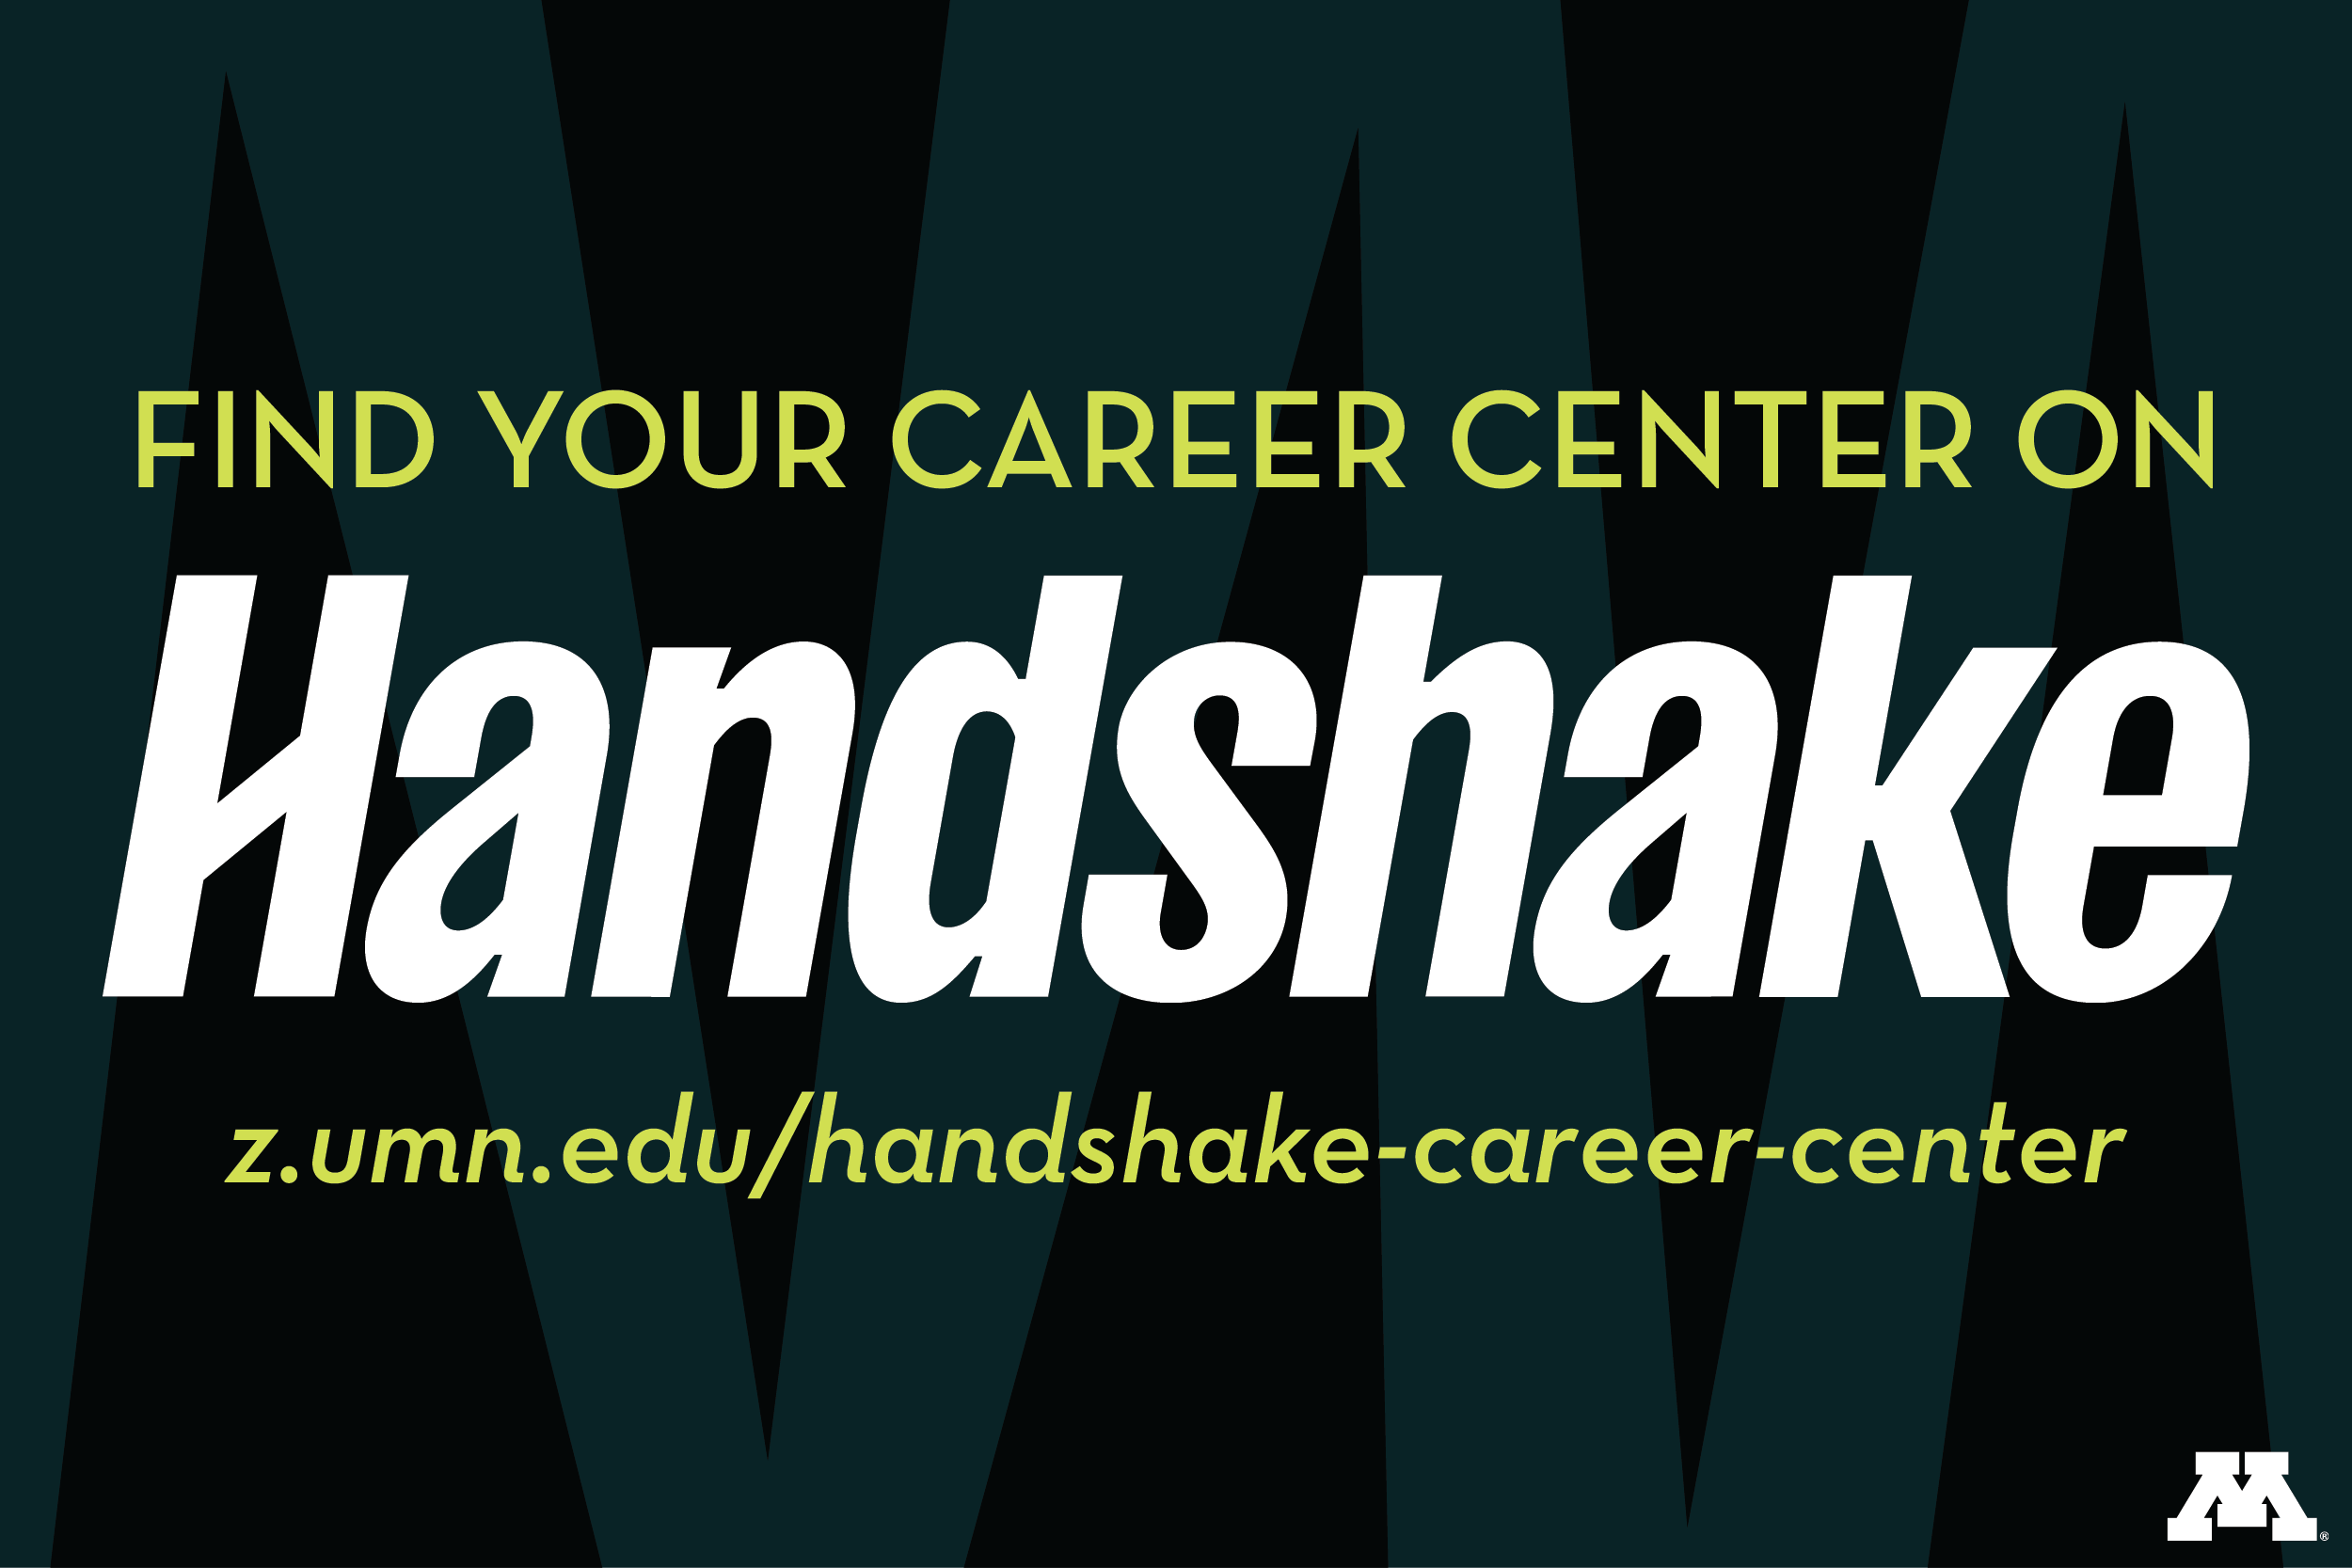 career center on handshake